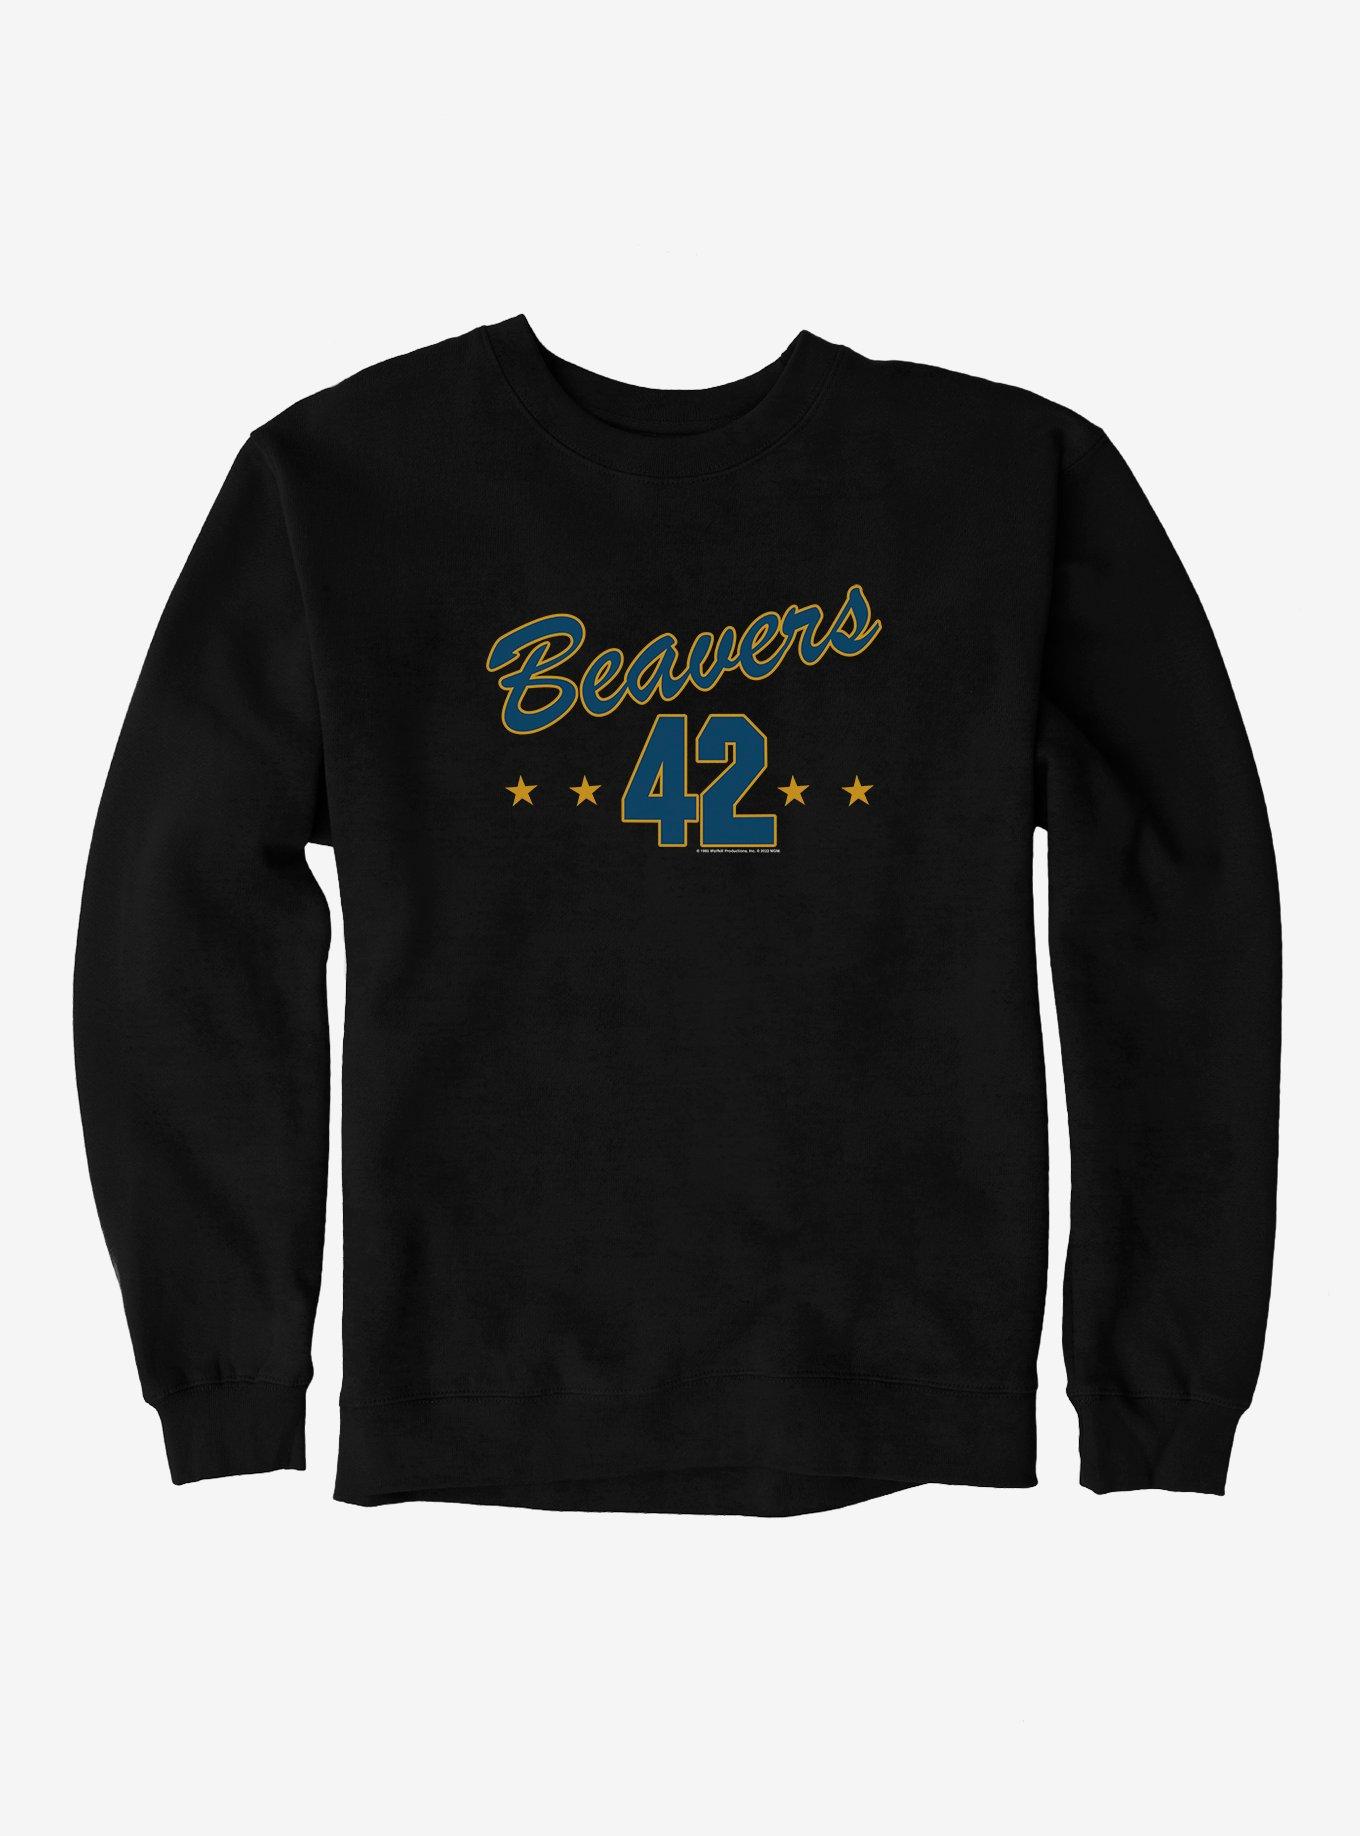 Teen Wolf Beavers 42 Sweatshirt, BLACK, hi-res